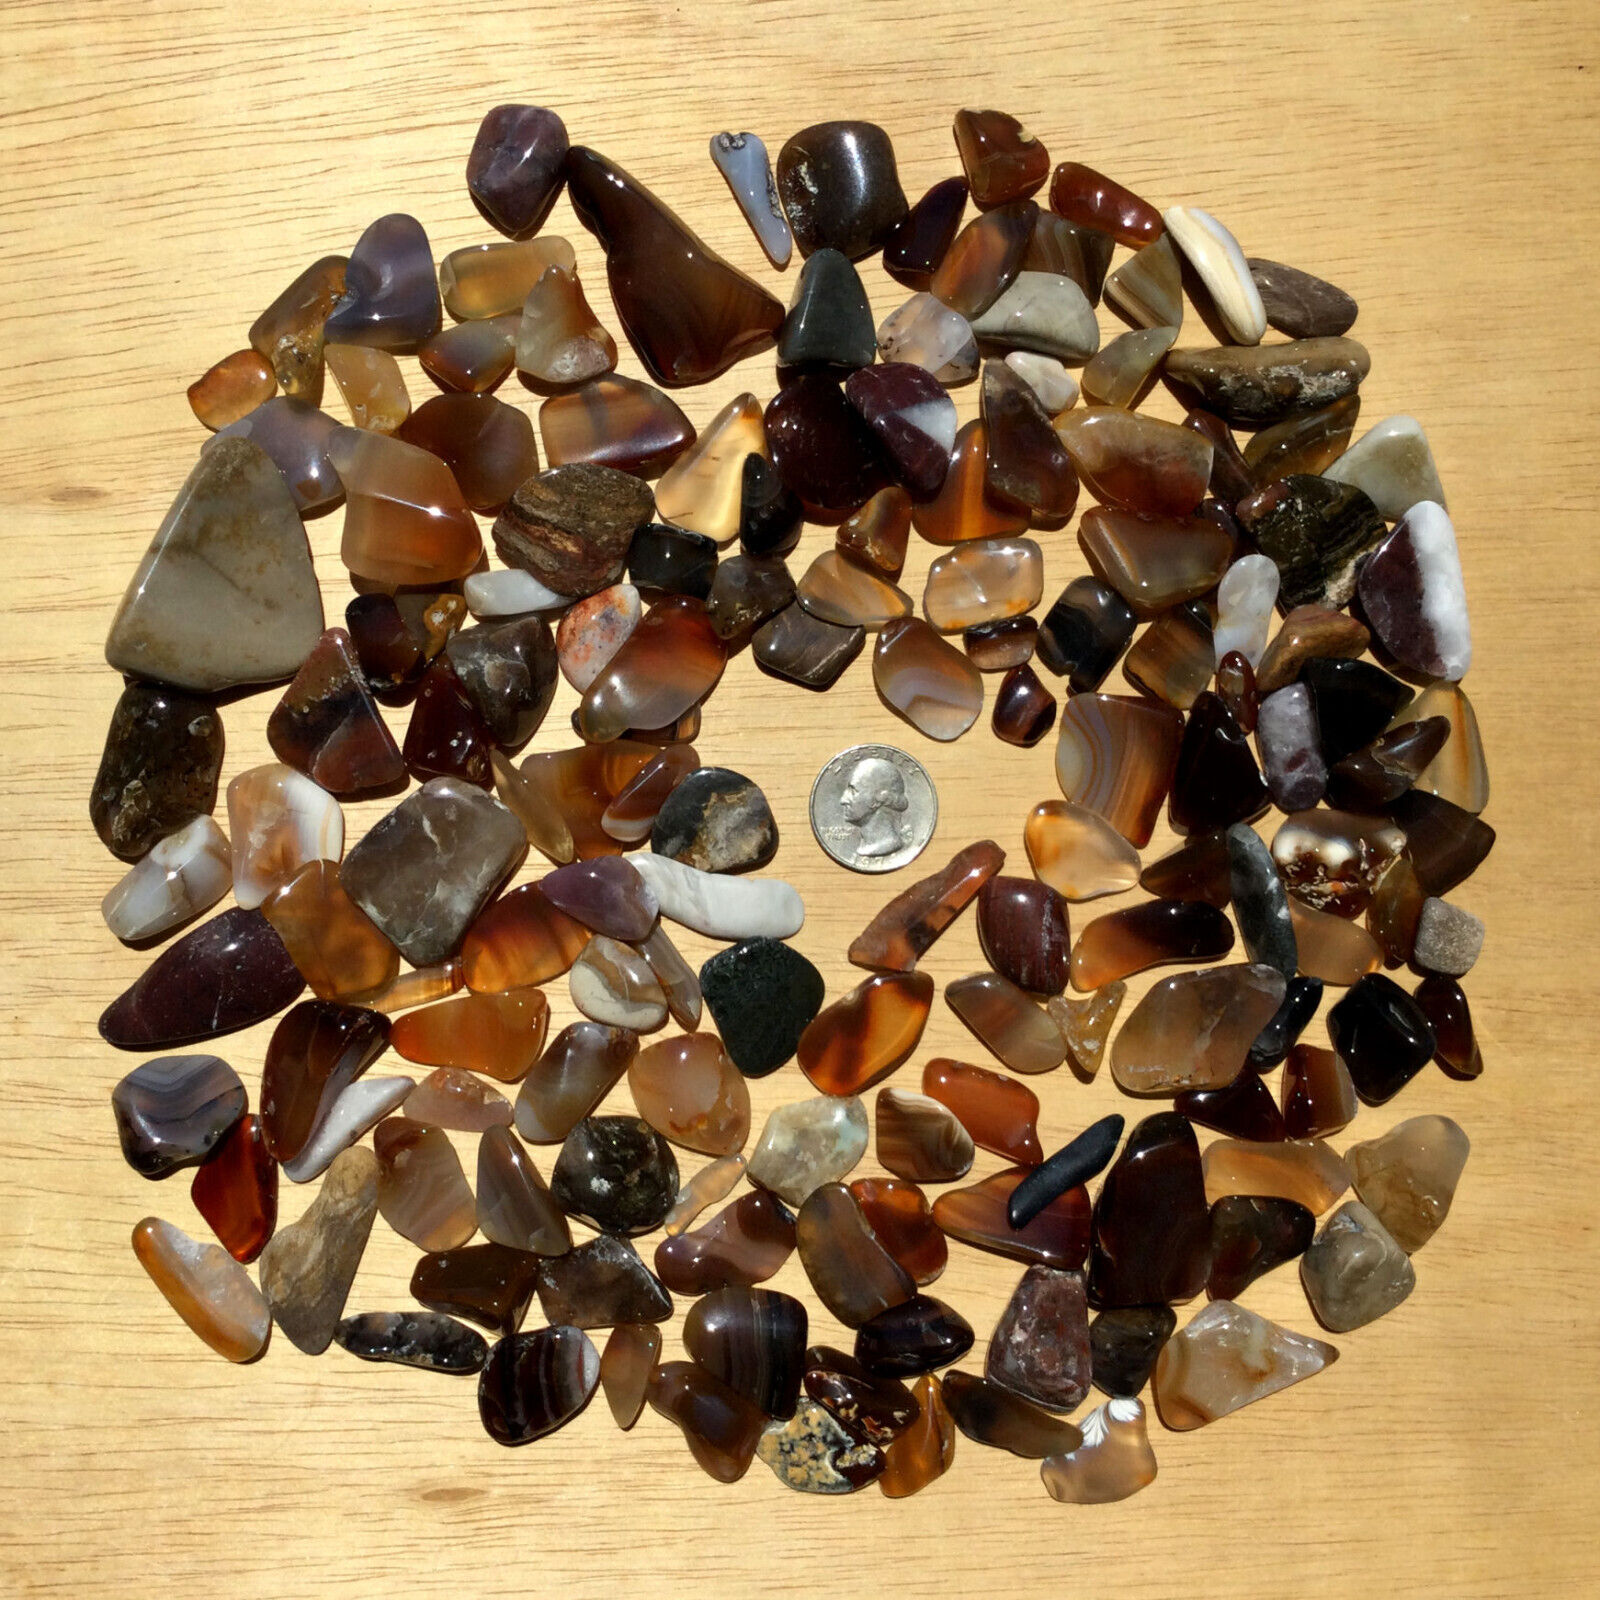 1.5 LB Lot Polished Stones Crystals Minerals Mixed Tumbled Rocks Natural Colors